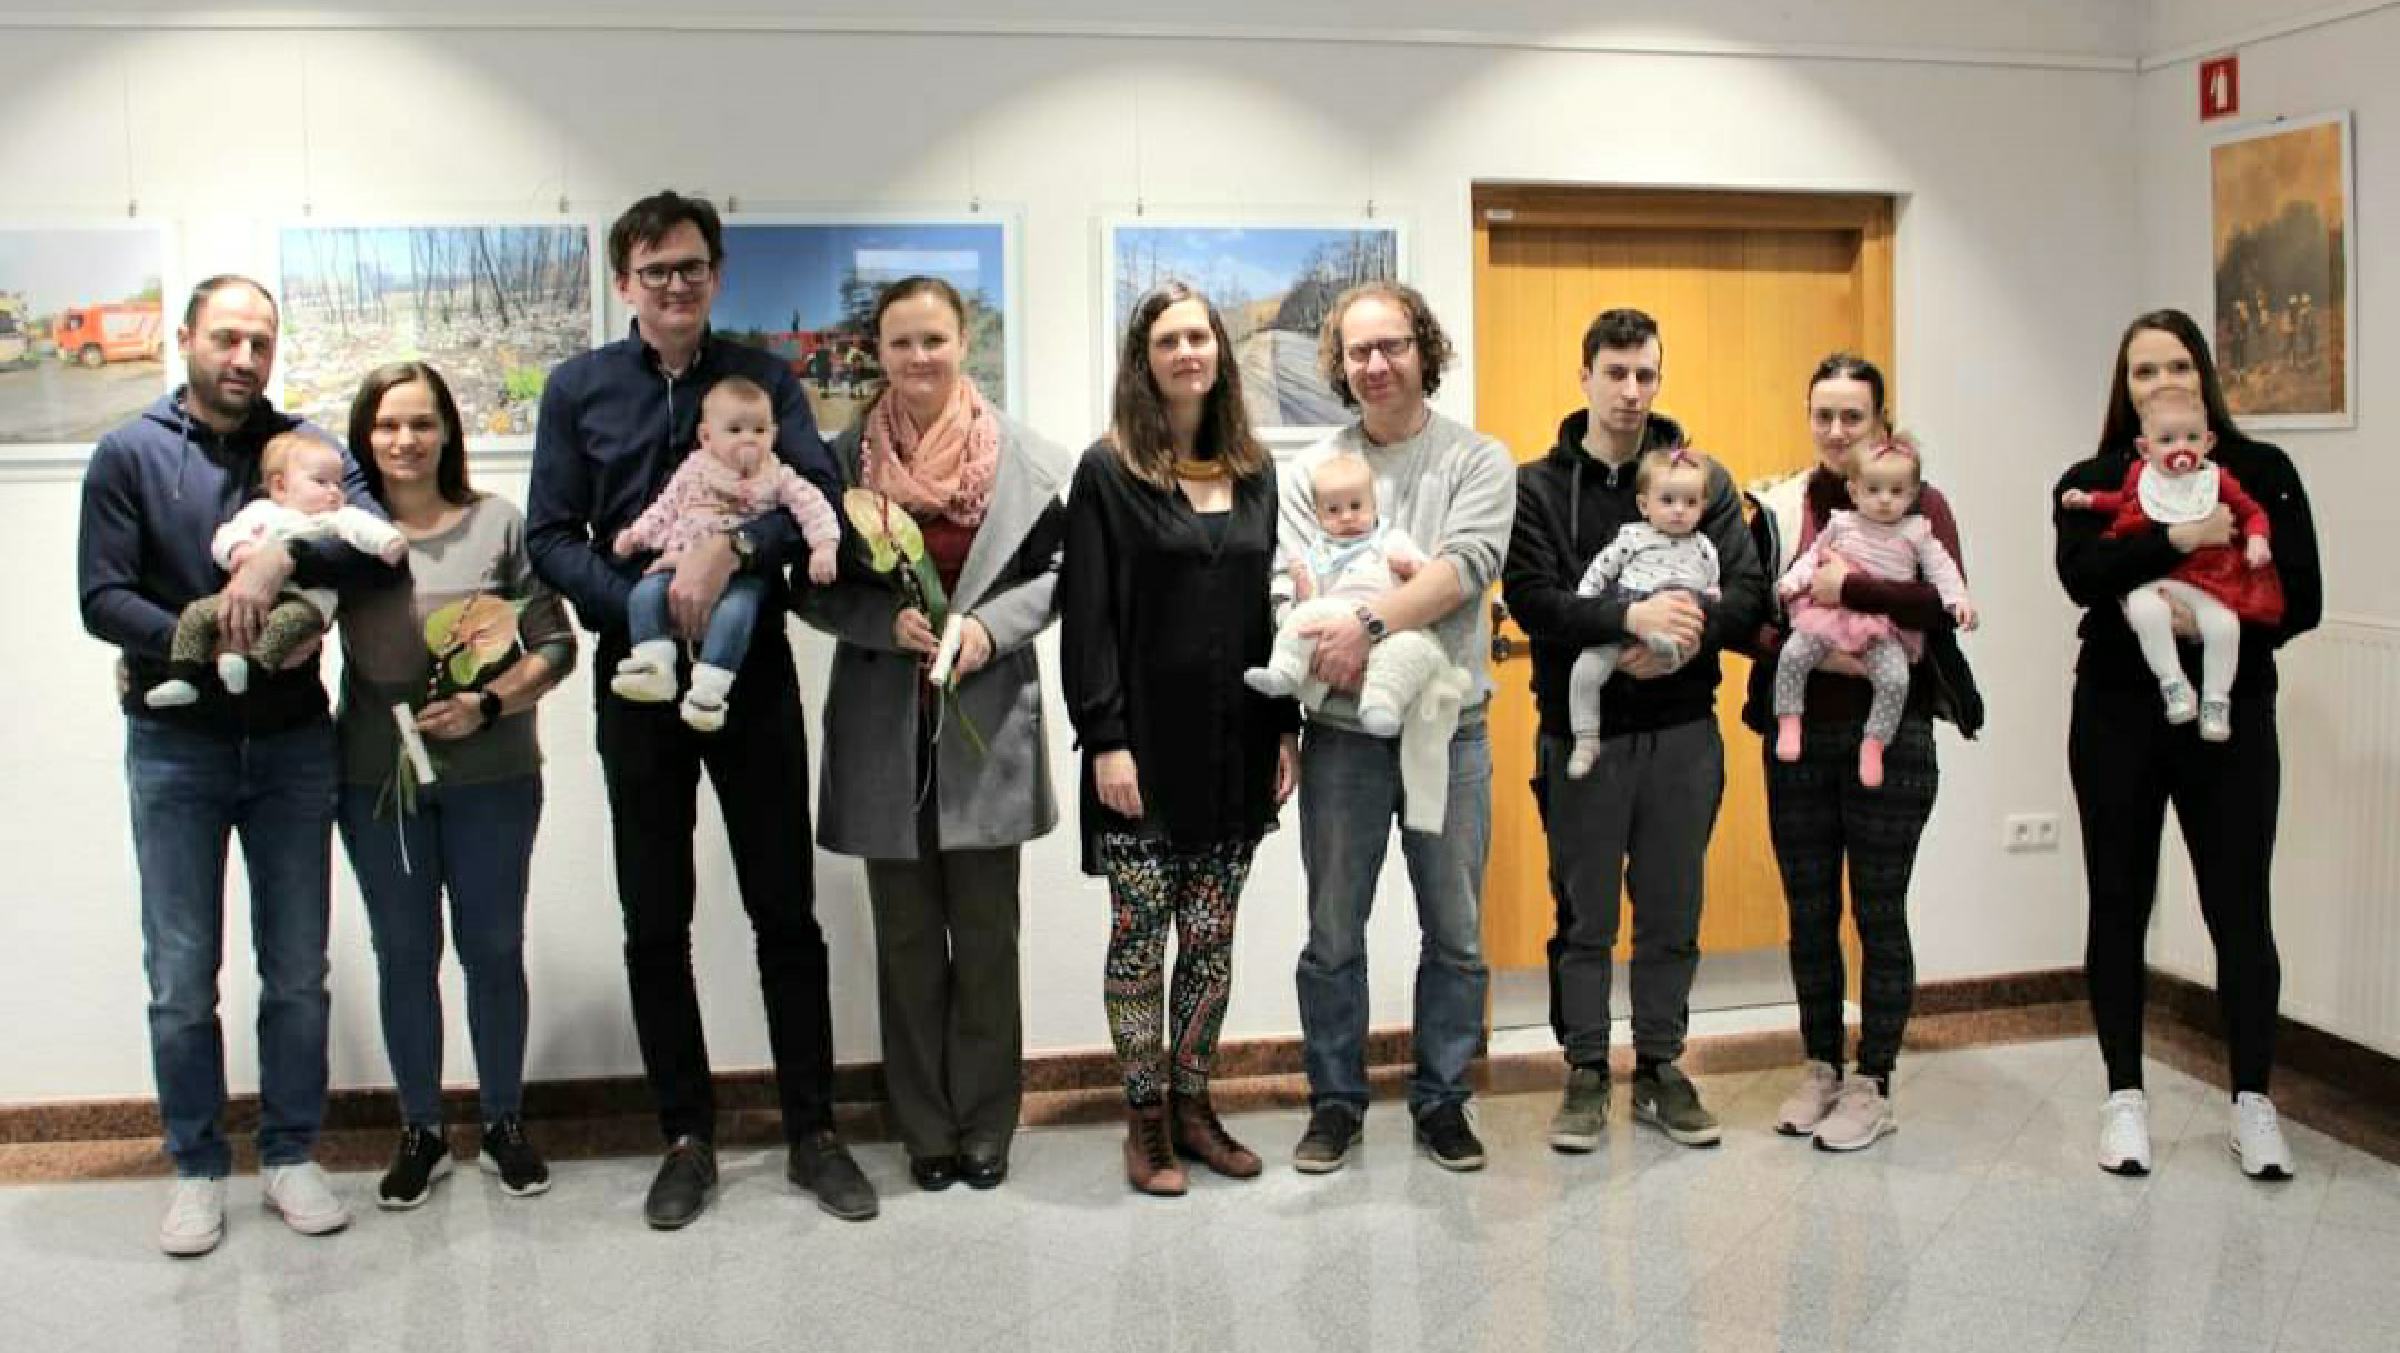 FOTO: Anovski župan sprejel novorojence, med njimi je bil tudi njegov šesti otrok